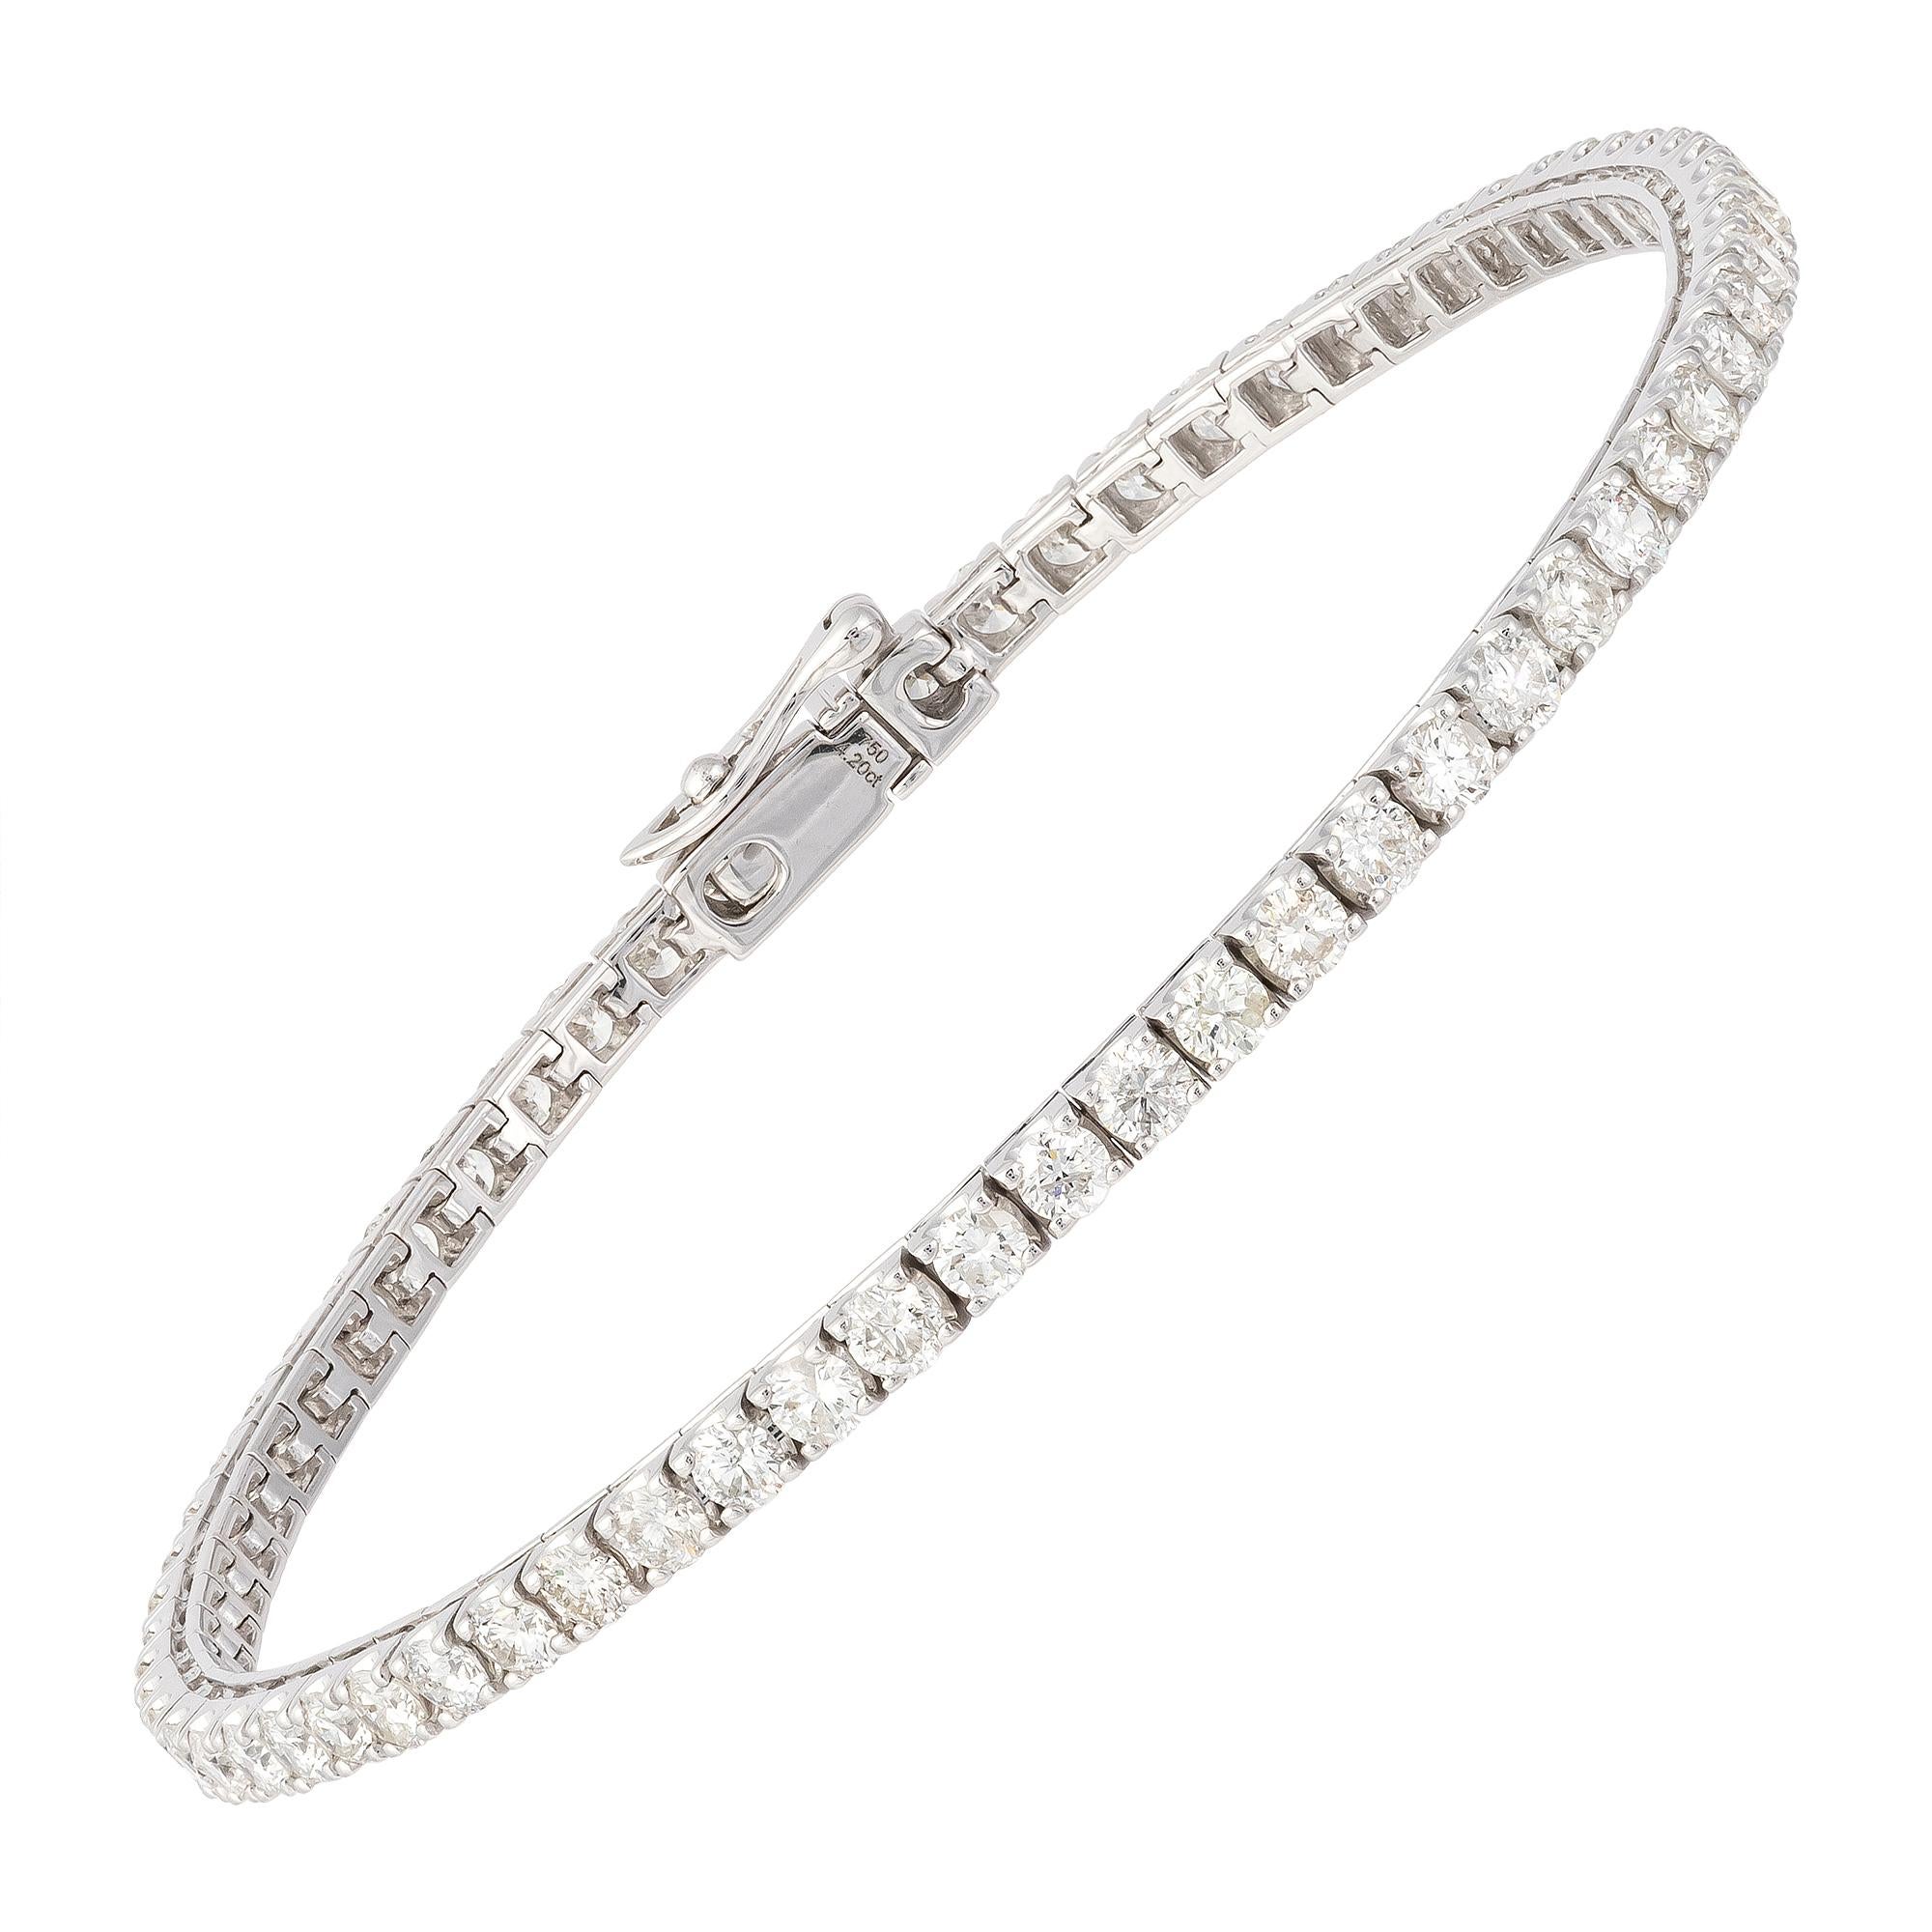 price of diamond tennis bracelet